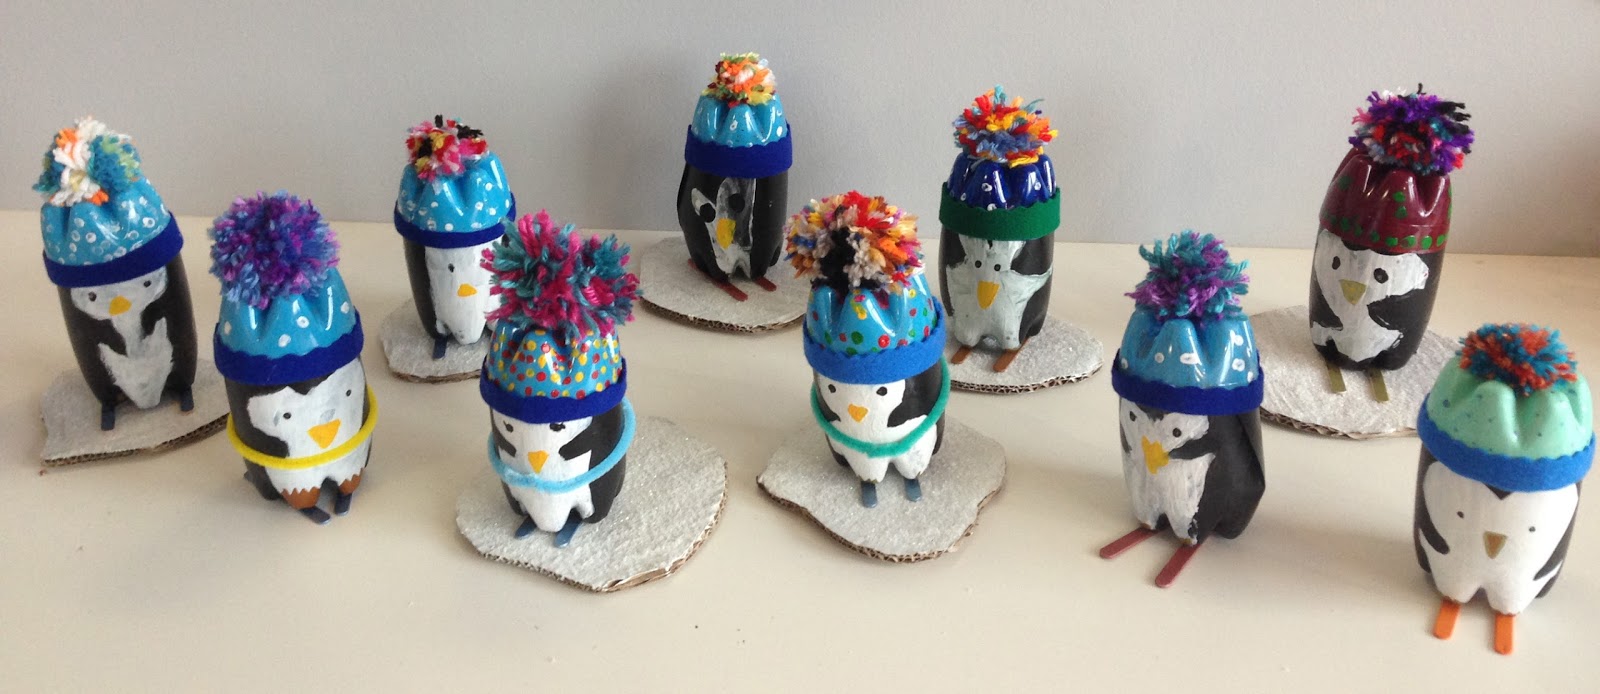 Bonhomme De Neige d'hiver Pingouin Fabricant De Boules De Neige Clip Outil De Moule De Neige Enfants Jouet De Jeu en Plein Air Moule De Fabricant De Boules De Neige